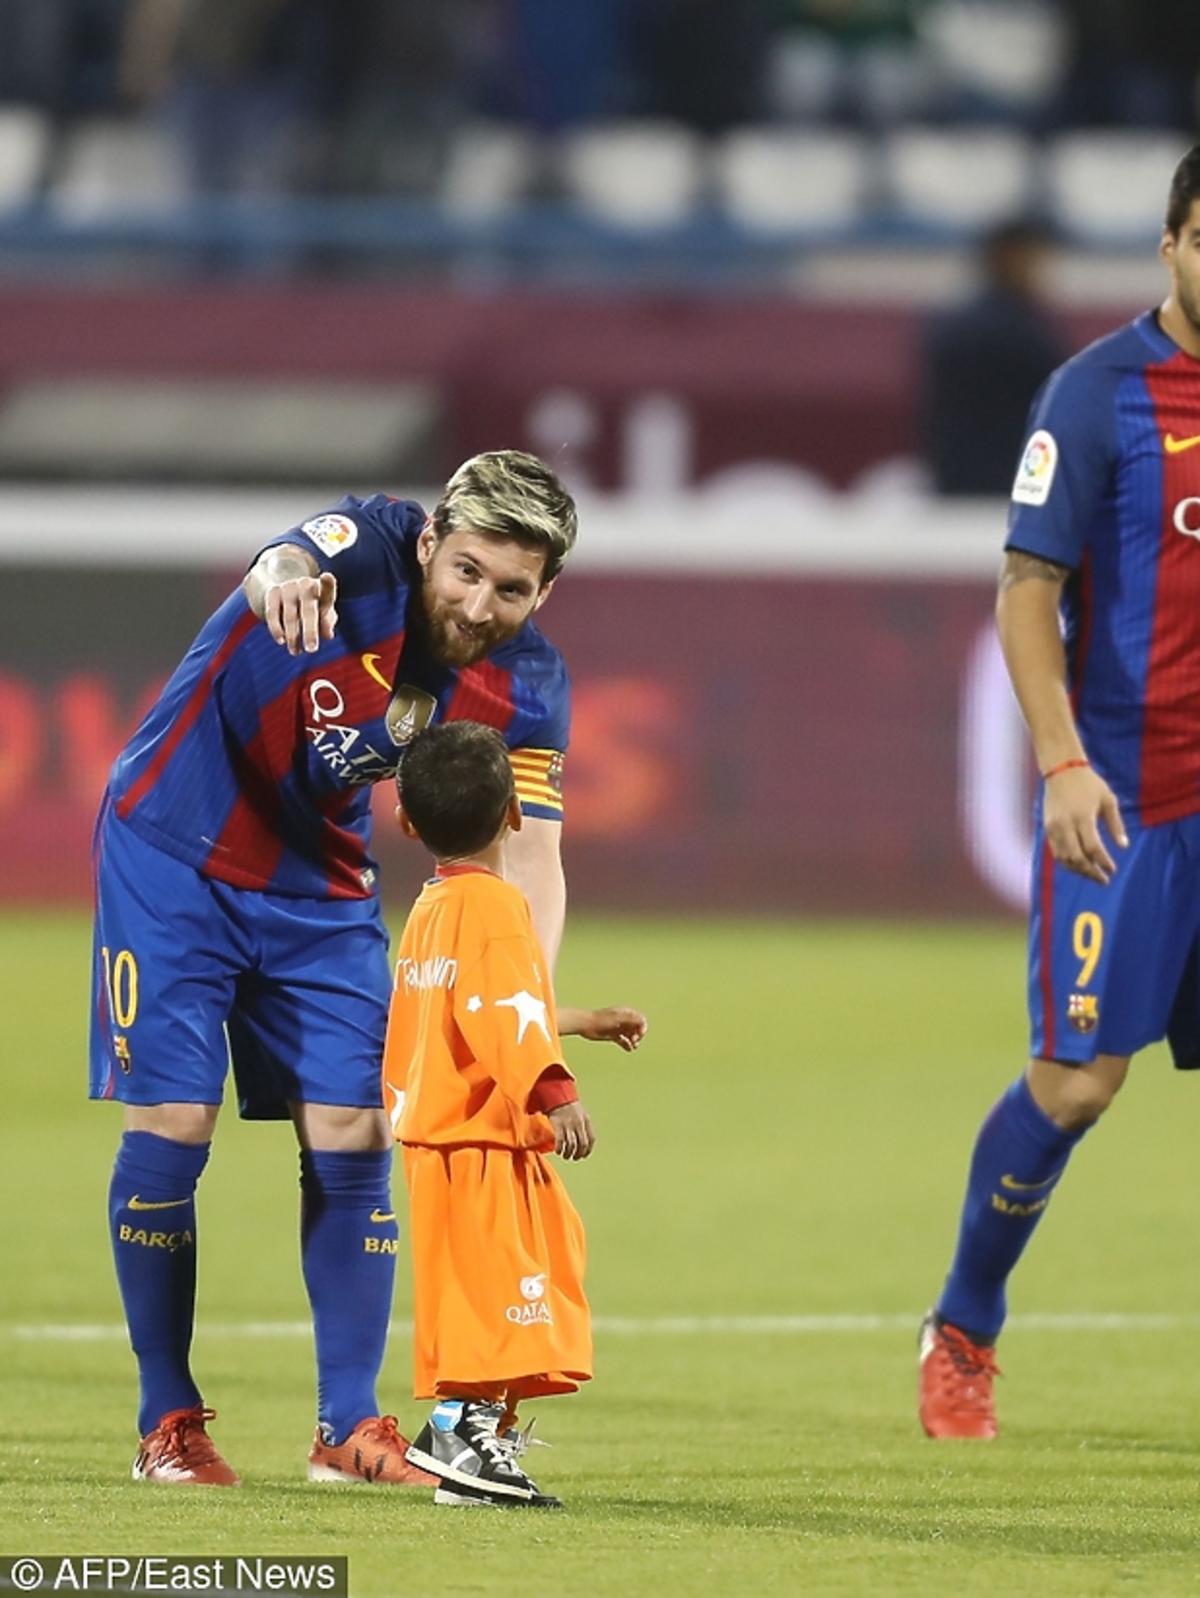 Gracz FC Barcelona spotkał się z afgańskim chłopcem, bohaterem zdjęcia, które zrobiło furrorę w sieci